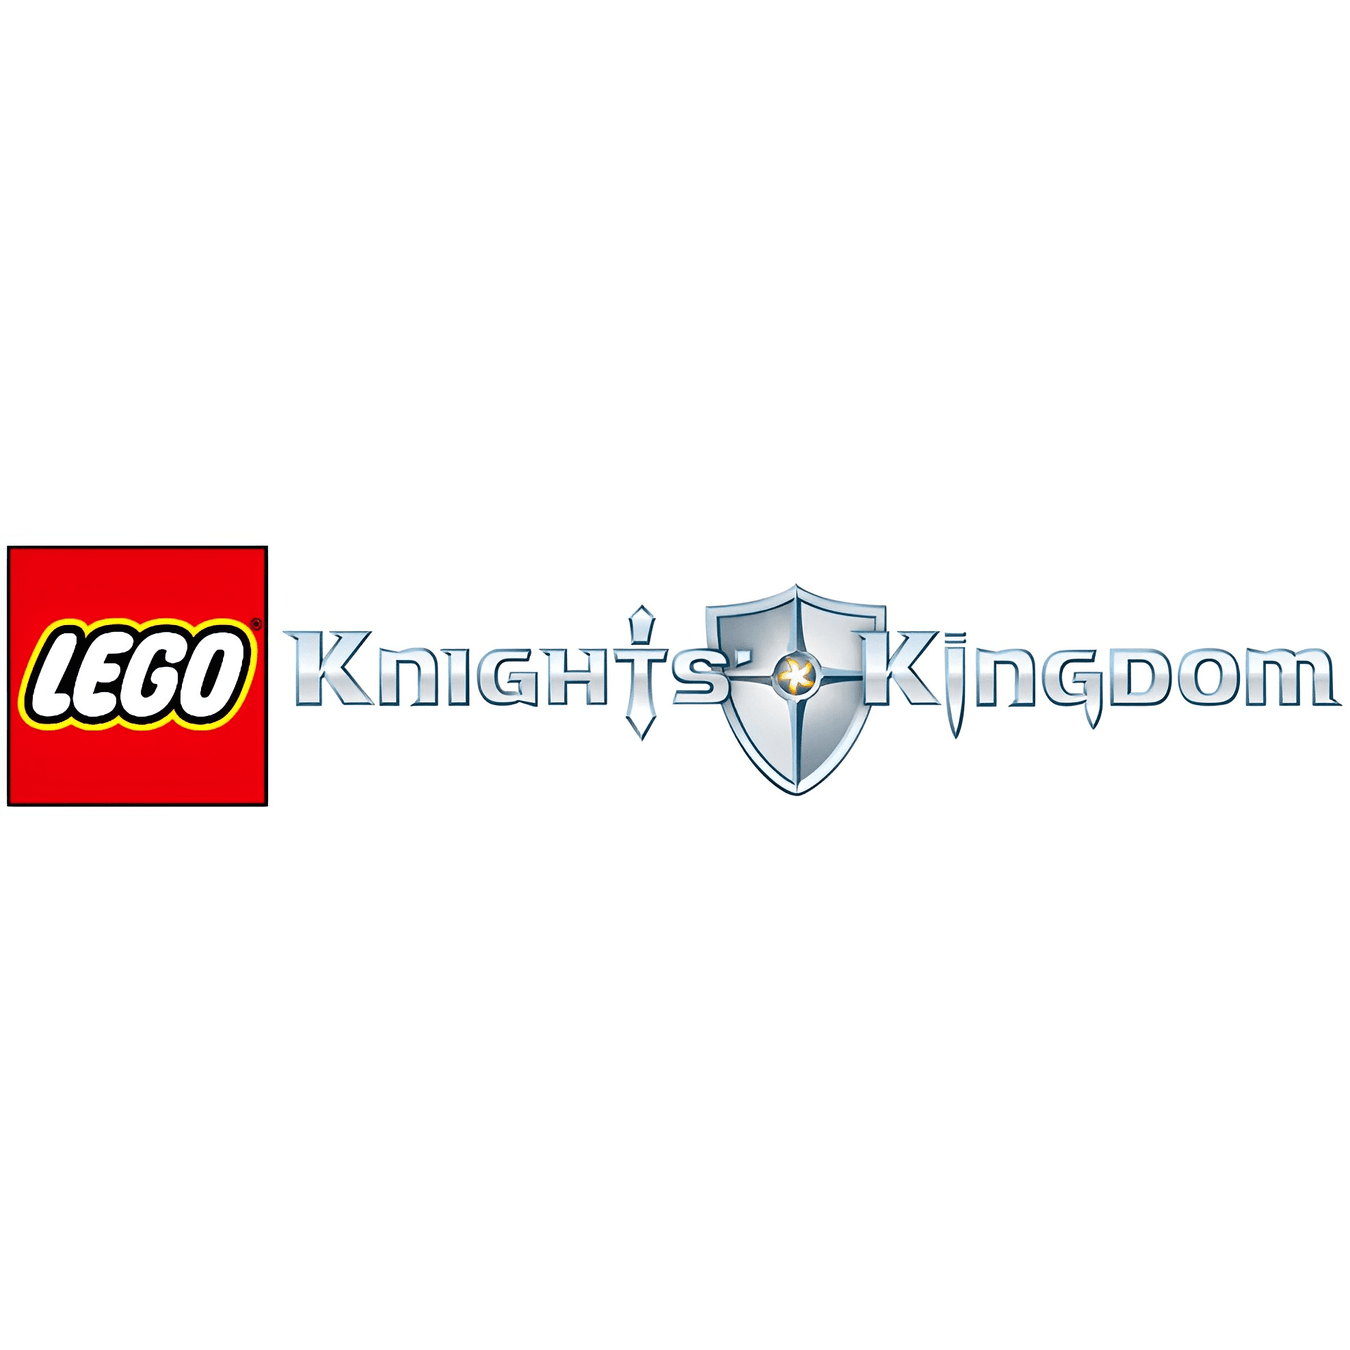 LEGO Knights' Kingdom Sets